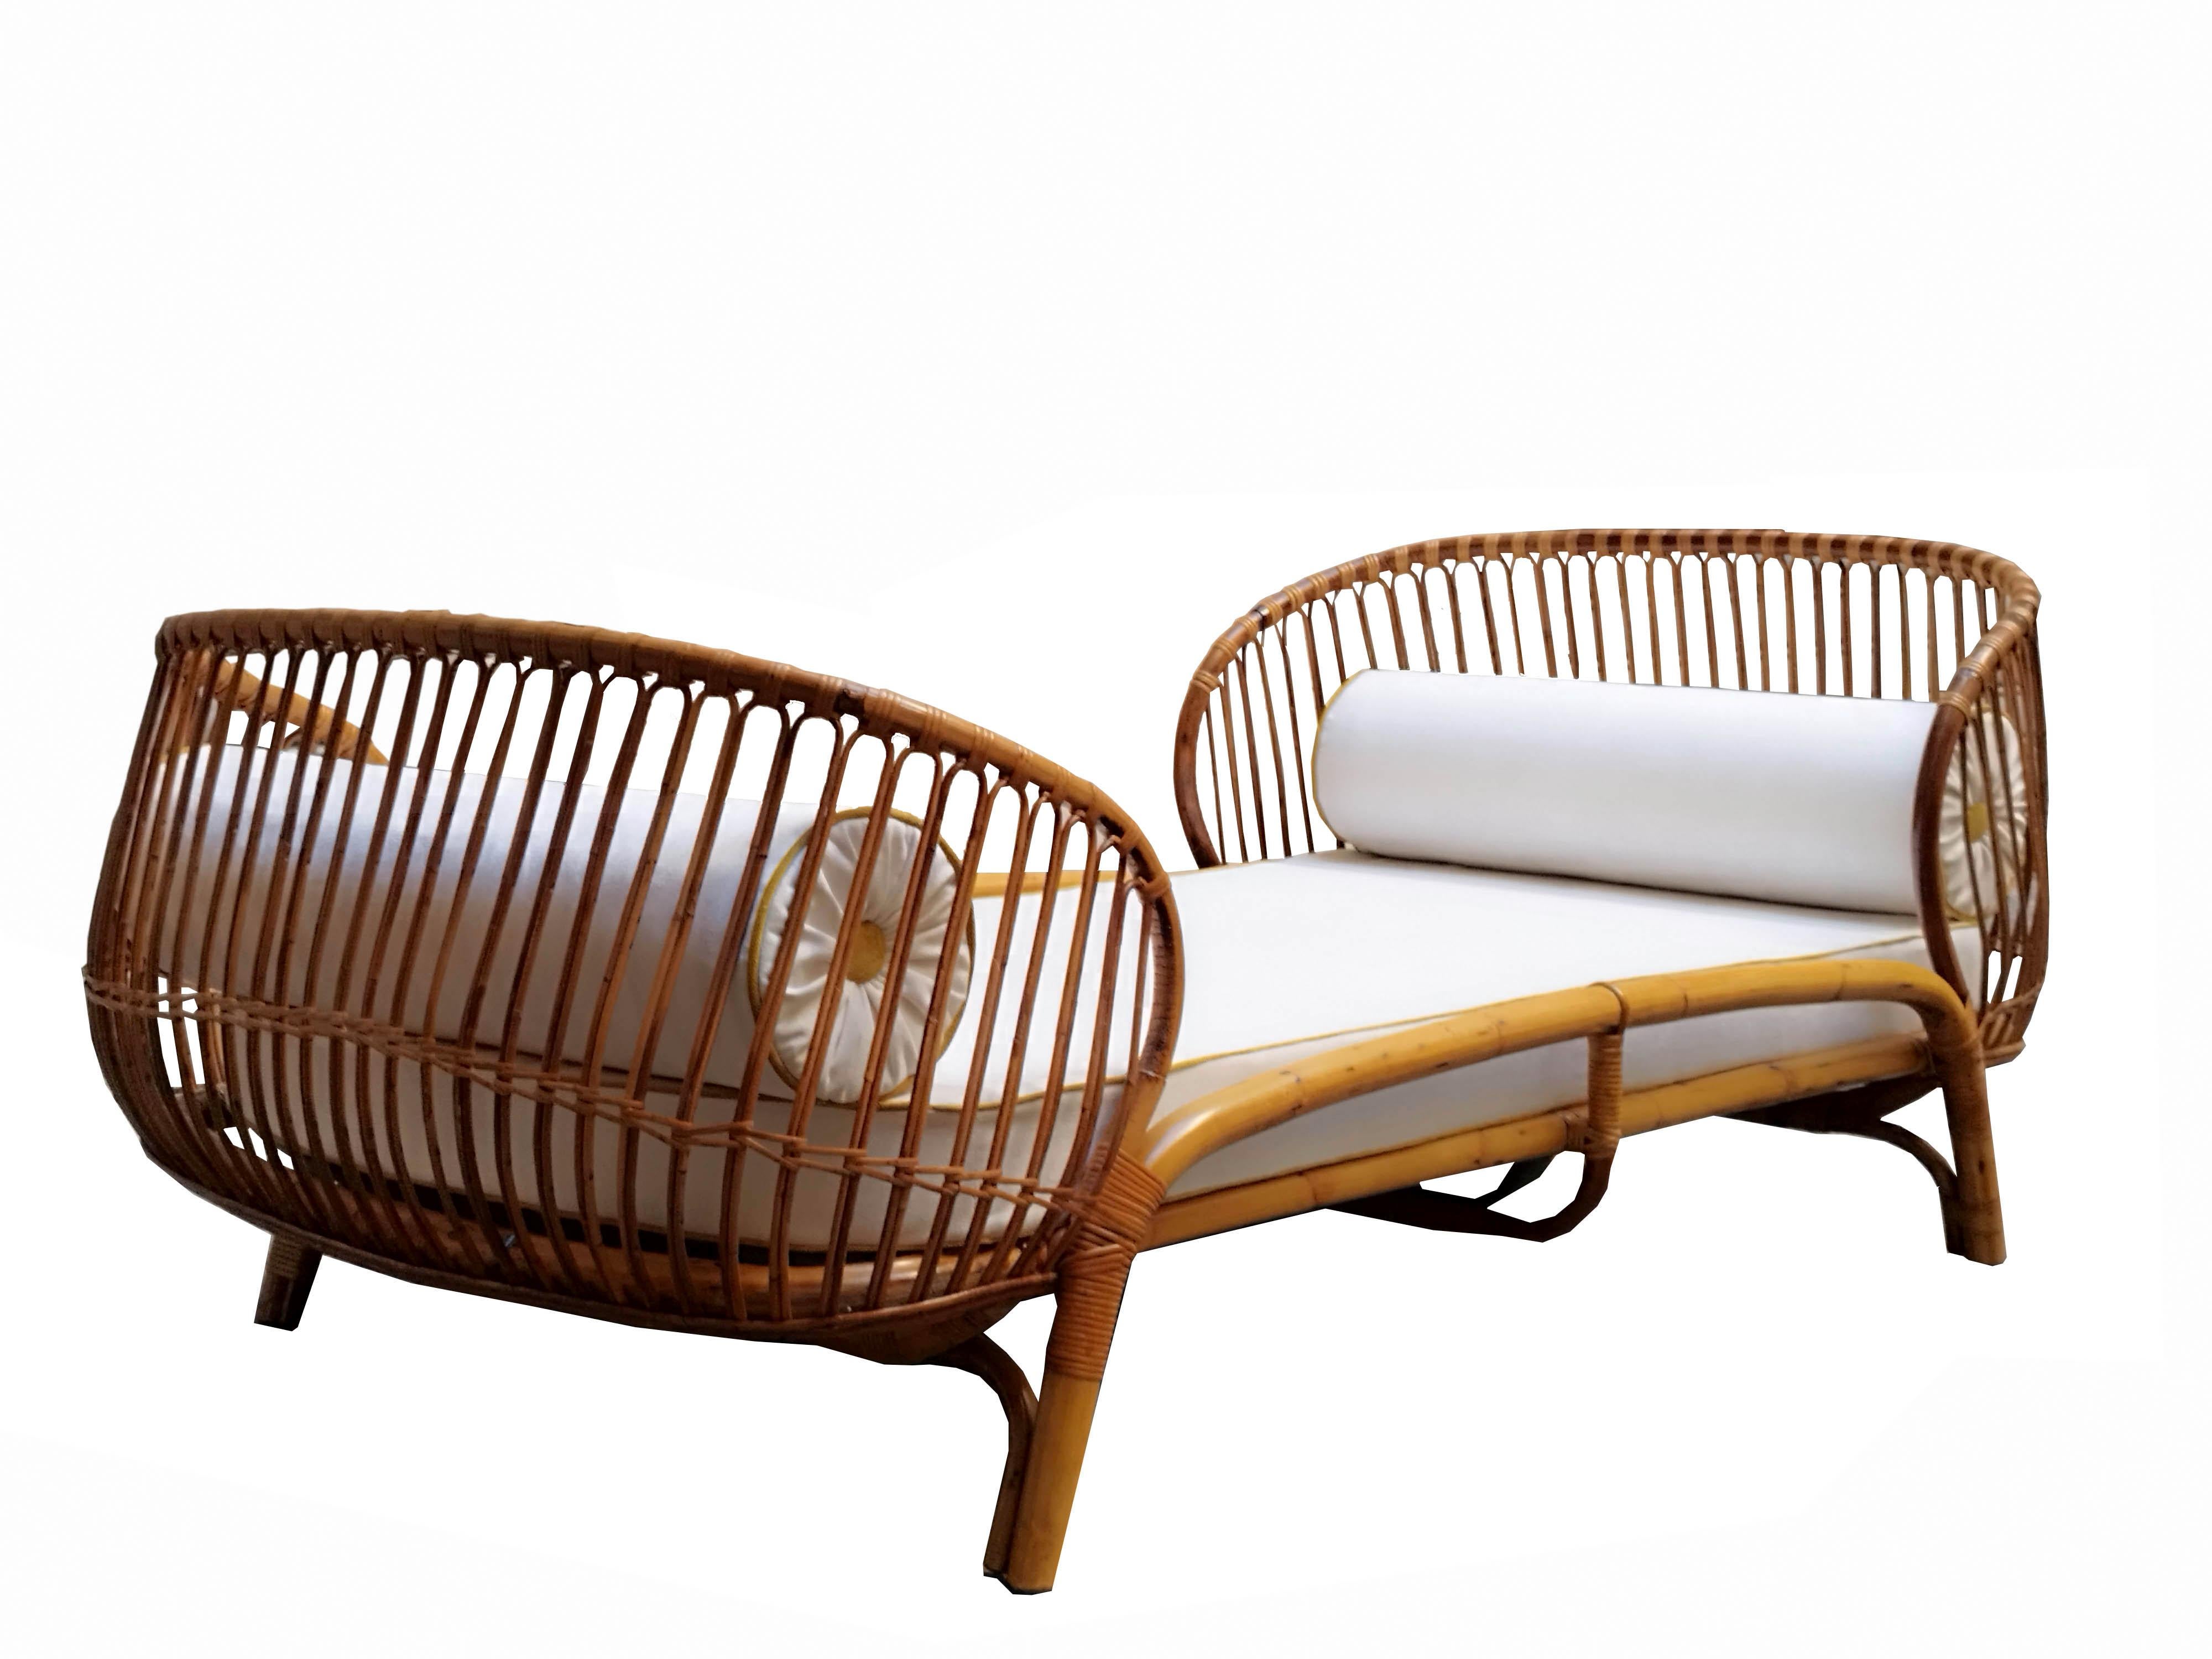 Un splendide lit de jour en bambou courbé conçu par Franca Helg pour Bonacina dans les années 1960. Le lit est entièrement constitué d'un cadre en bambou, de rotin et de joints en jonc.